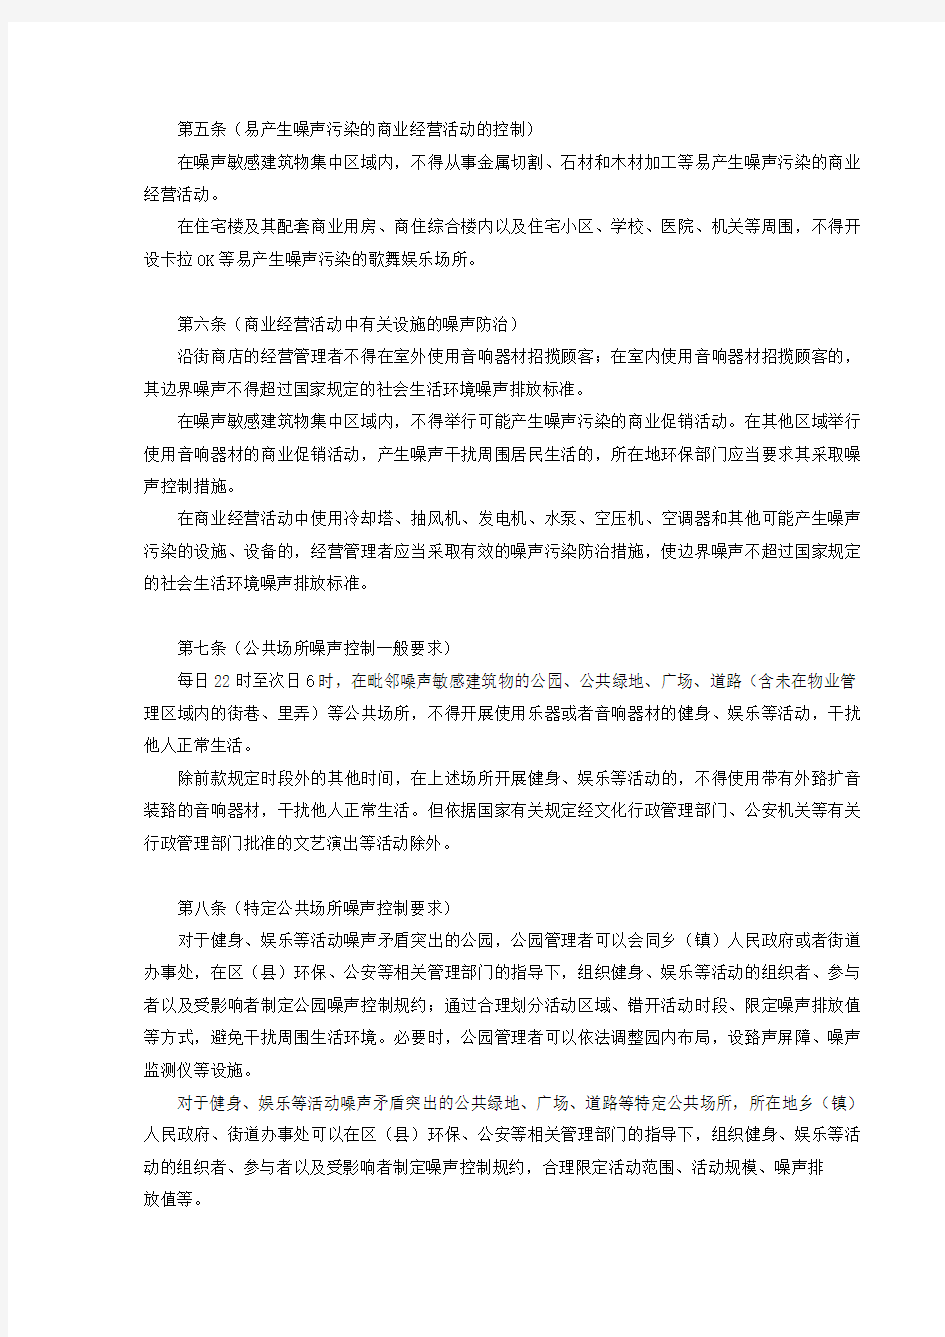 上海市社会生活噪声污染防治办法(同时废止上海市固定噪声污染控制管理办法)